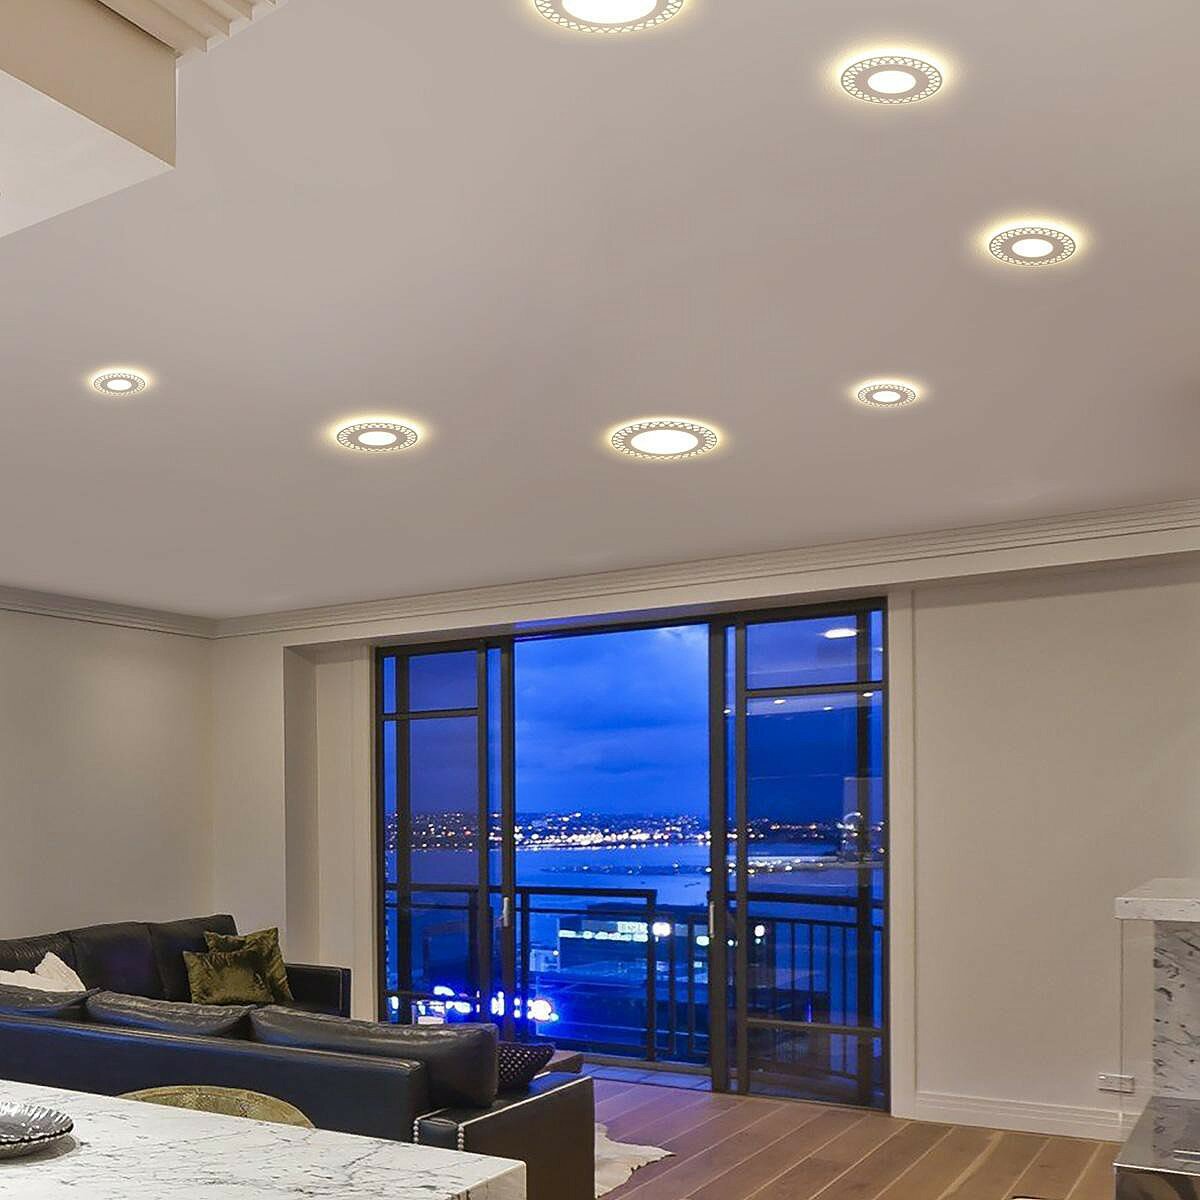 Встраиваемые потолочные светильники - удобство и качество